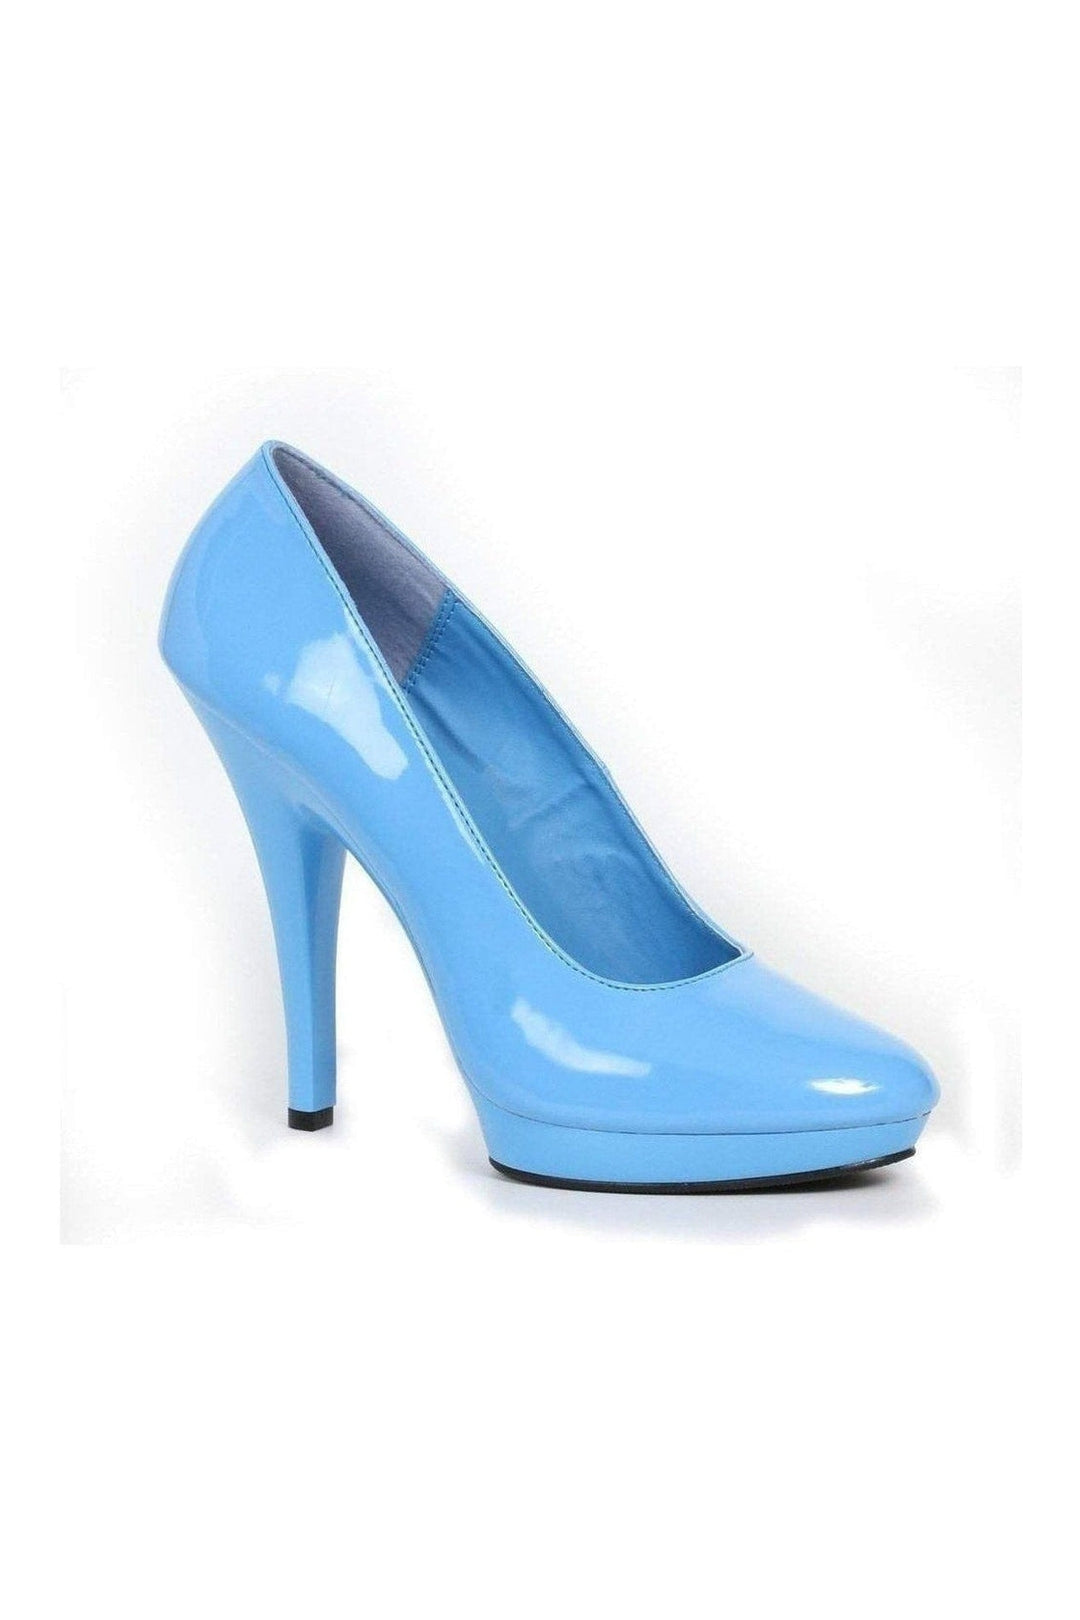 521-FEMME-W Pump | Blue Patent-Ellie Shoes-Blue-Pumps-SEXYSHOES.COM